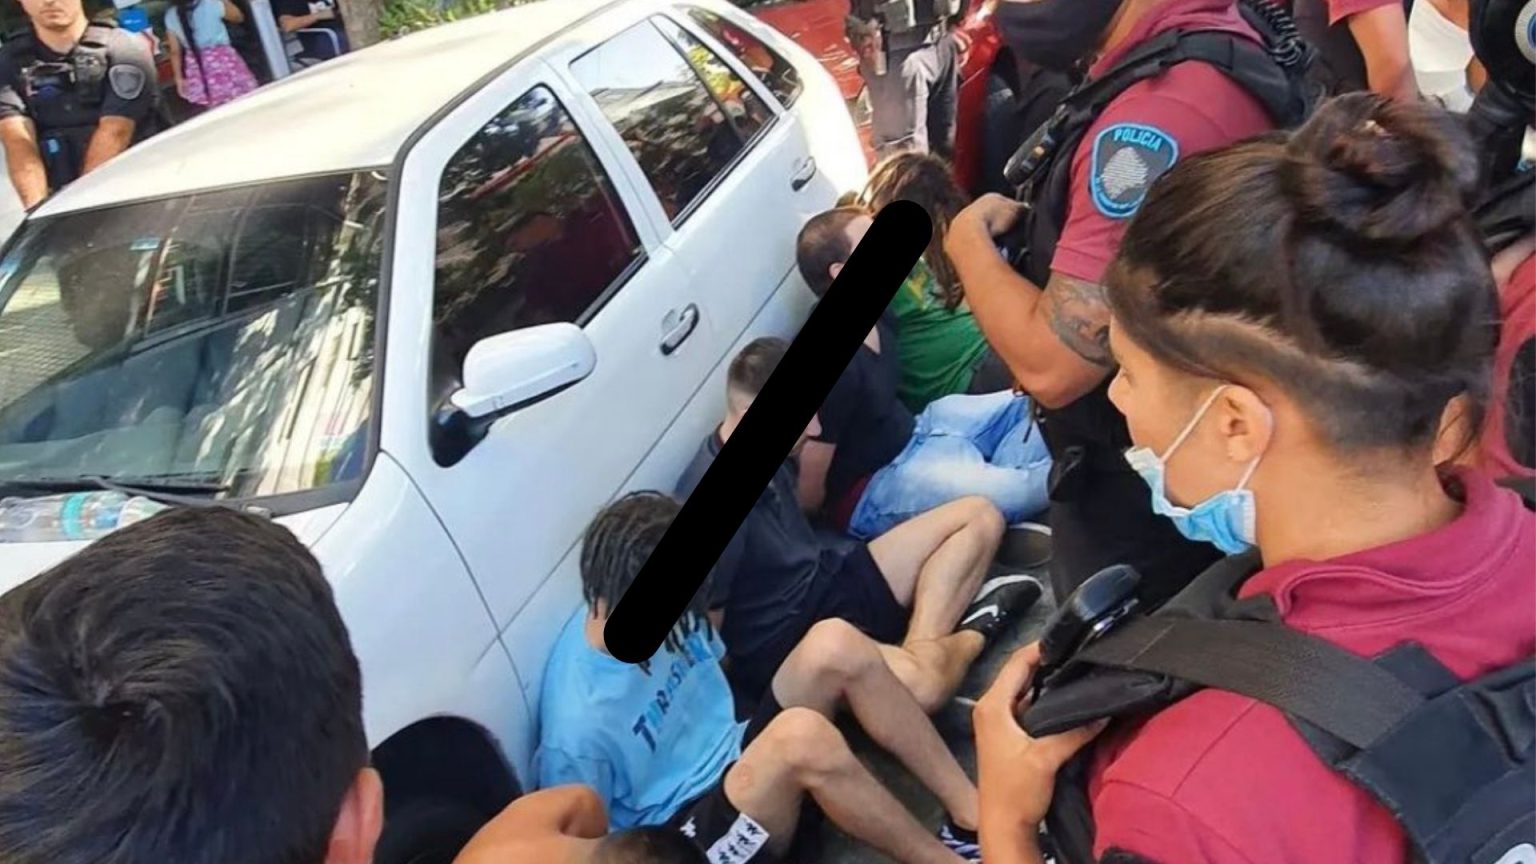 seis jóvenes violaron a una chica dentro de un carro en palermo